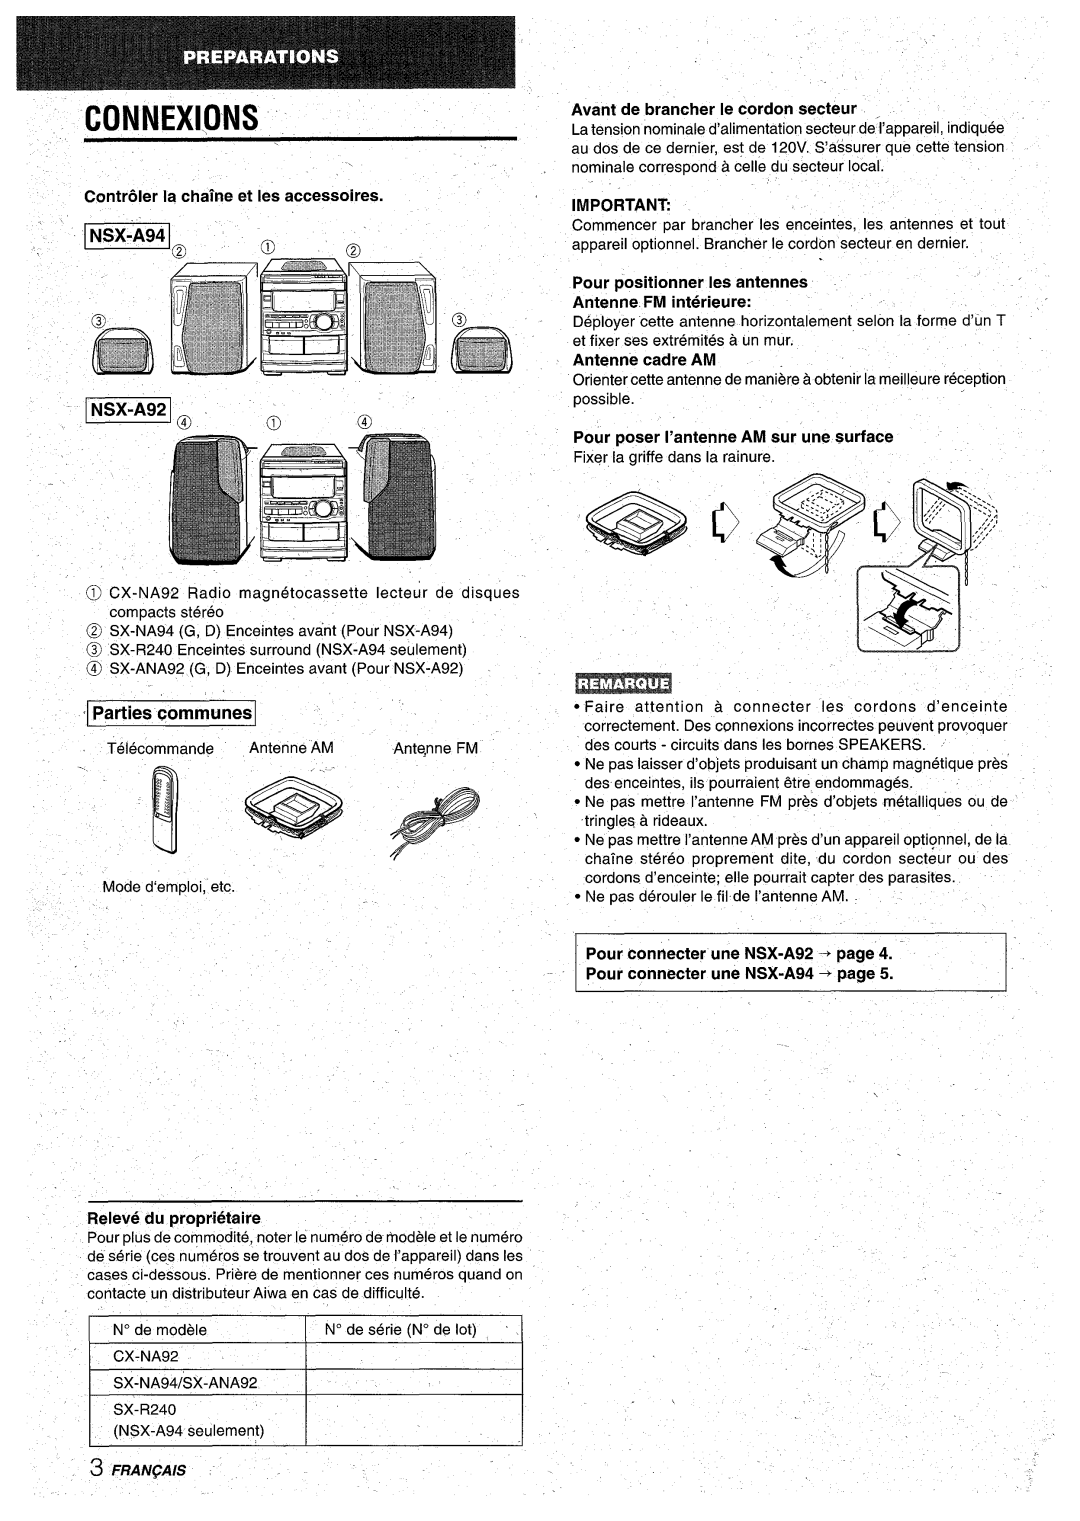 Aiwa CX-NA92 manual t CONNEXI.ONS, ‘ Parties communes, Releve du proprietaire, Antenne cadre AM, Fran~Ais 